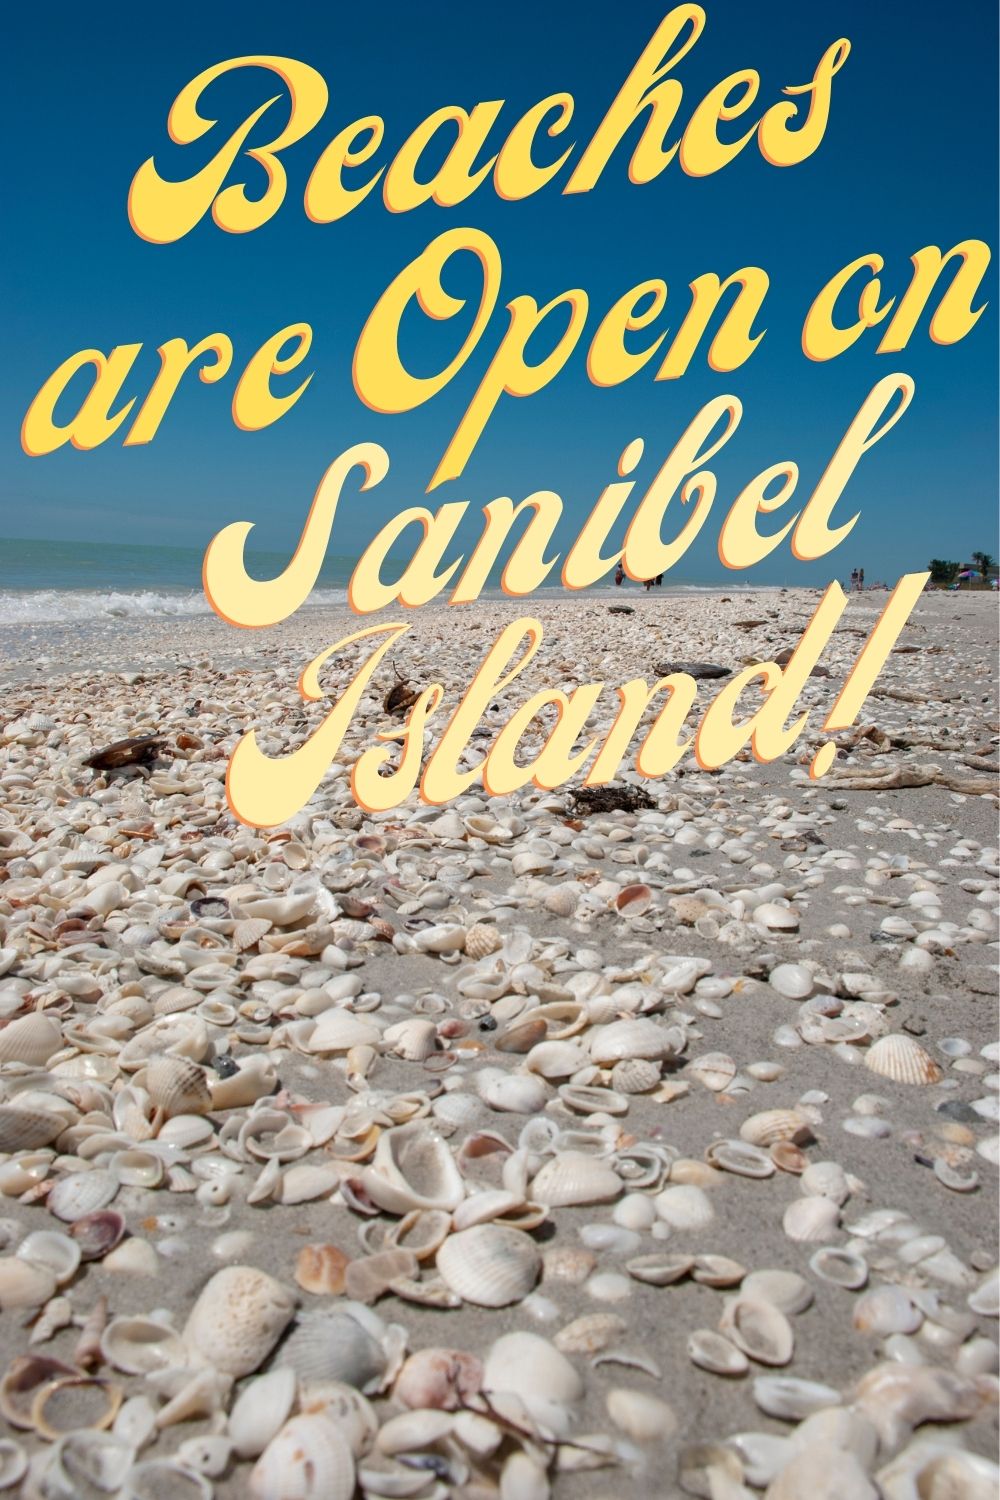 Beaches are Open on Sanibel Island!